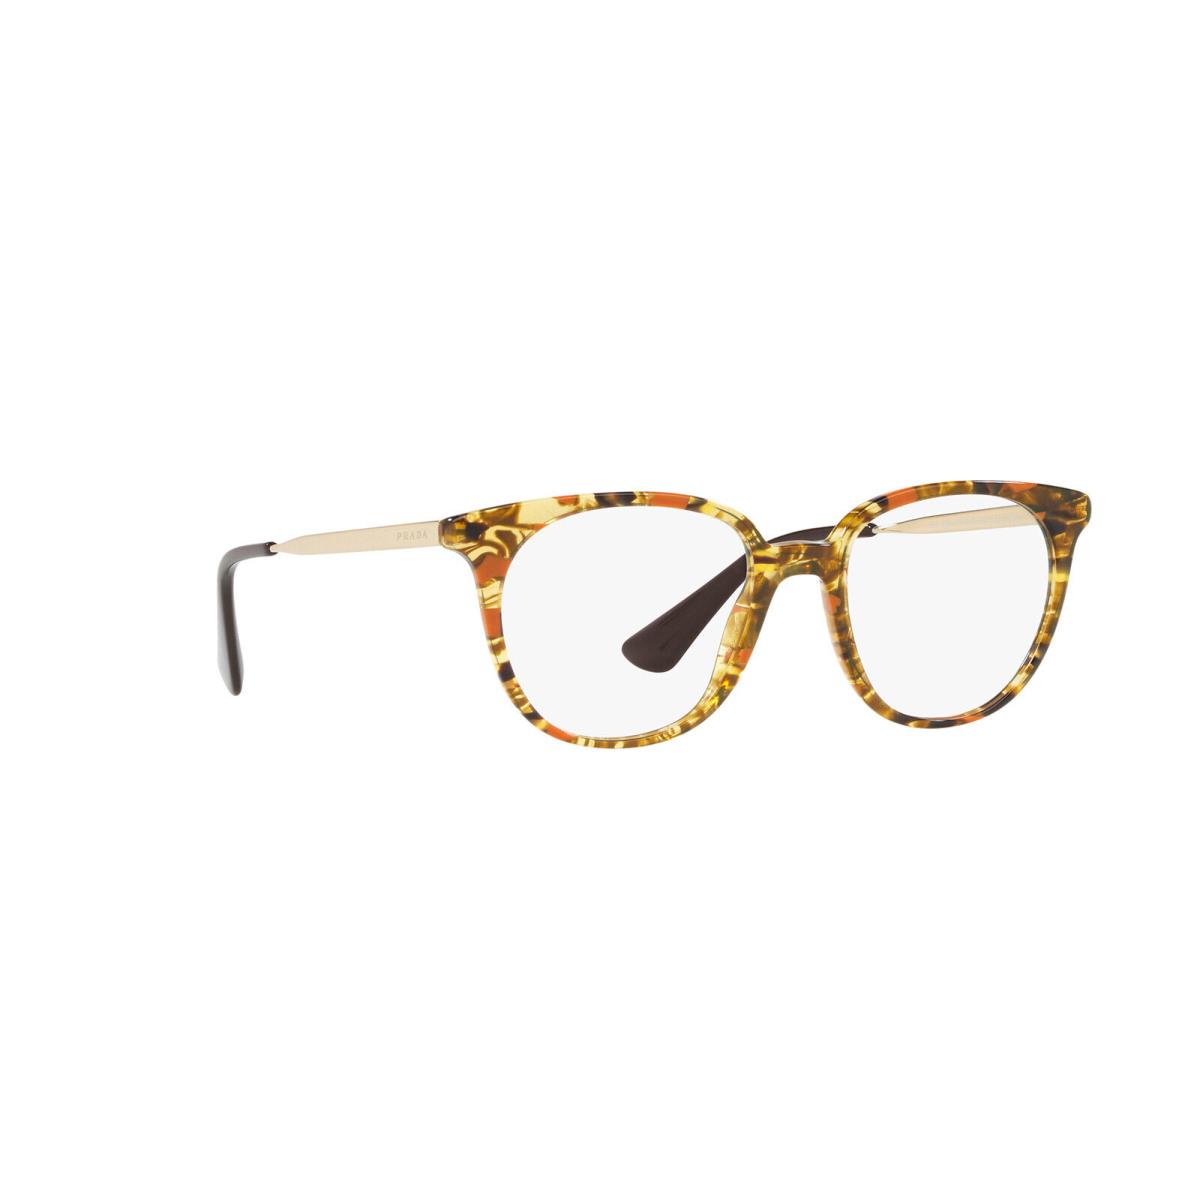 Prada Vpr 13U KJN-1O1 Round Striped Brown Orange Eyeglasses 50-18-140 VPR13U RX - Orange, Frame: Brown, Lens: